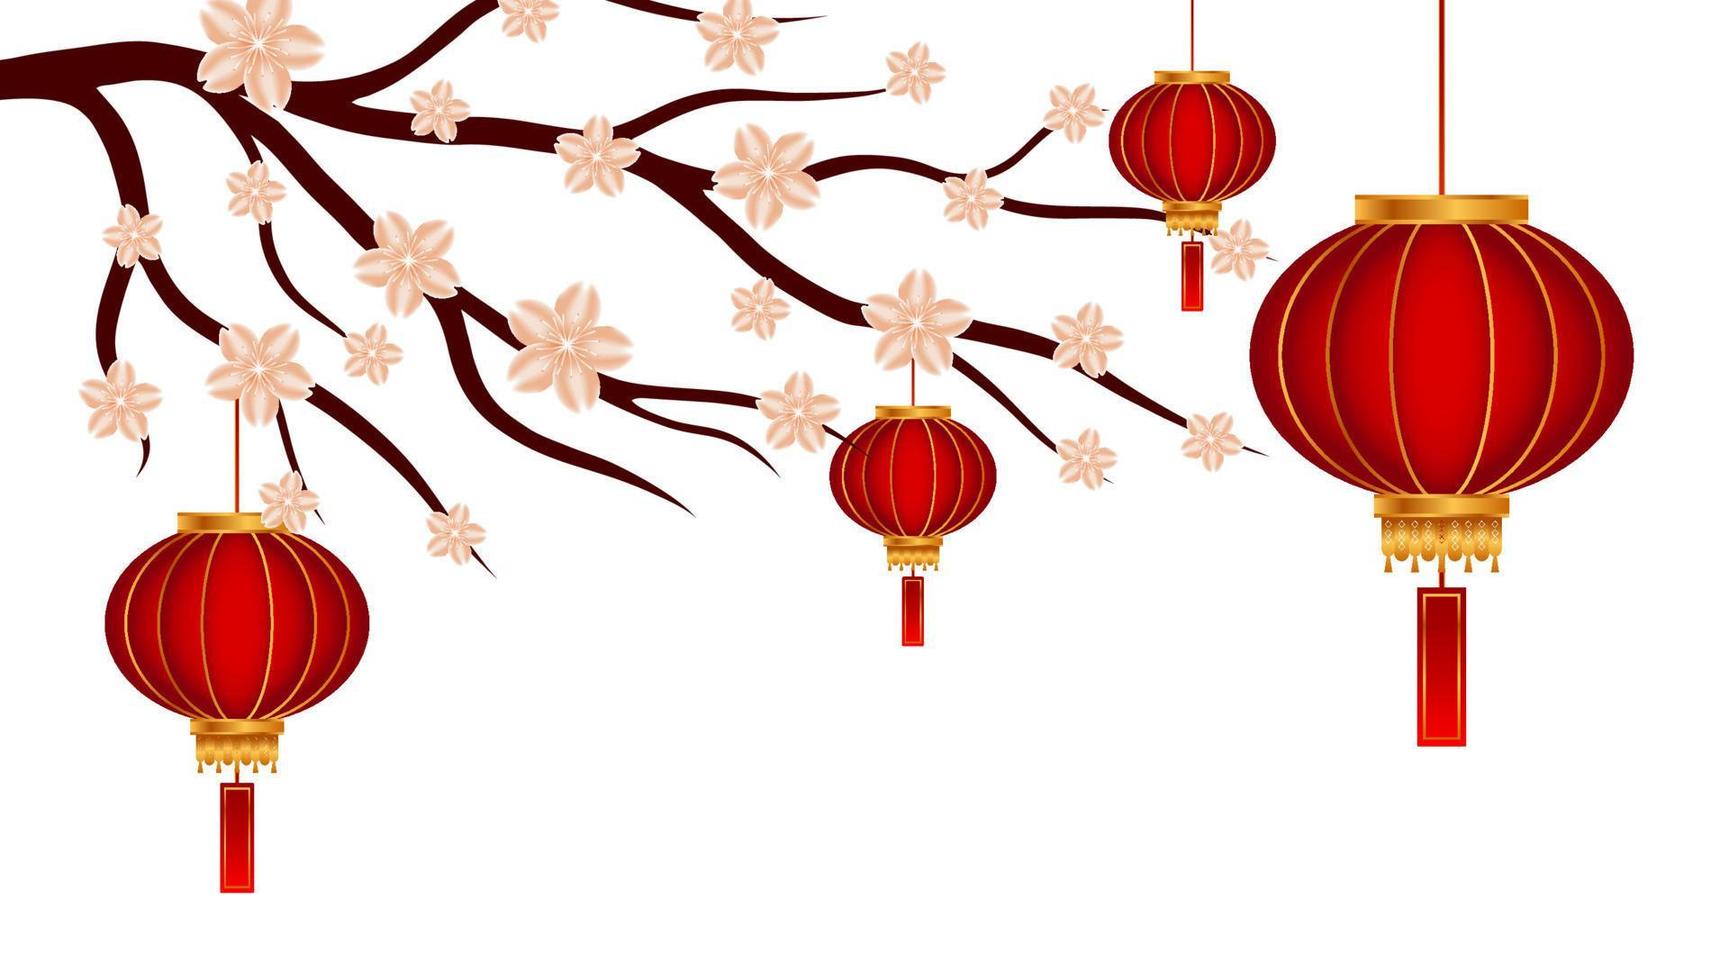 sakura ou ramo de flor de cerejeira e lanterna de lâmpada chinesa em fundo branco. ornamento de design para impressão em cartões, convites vetor